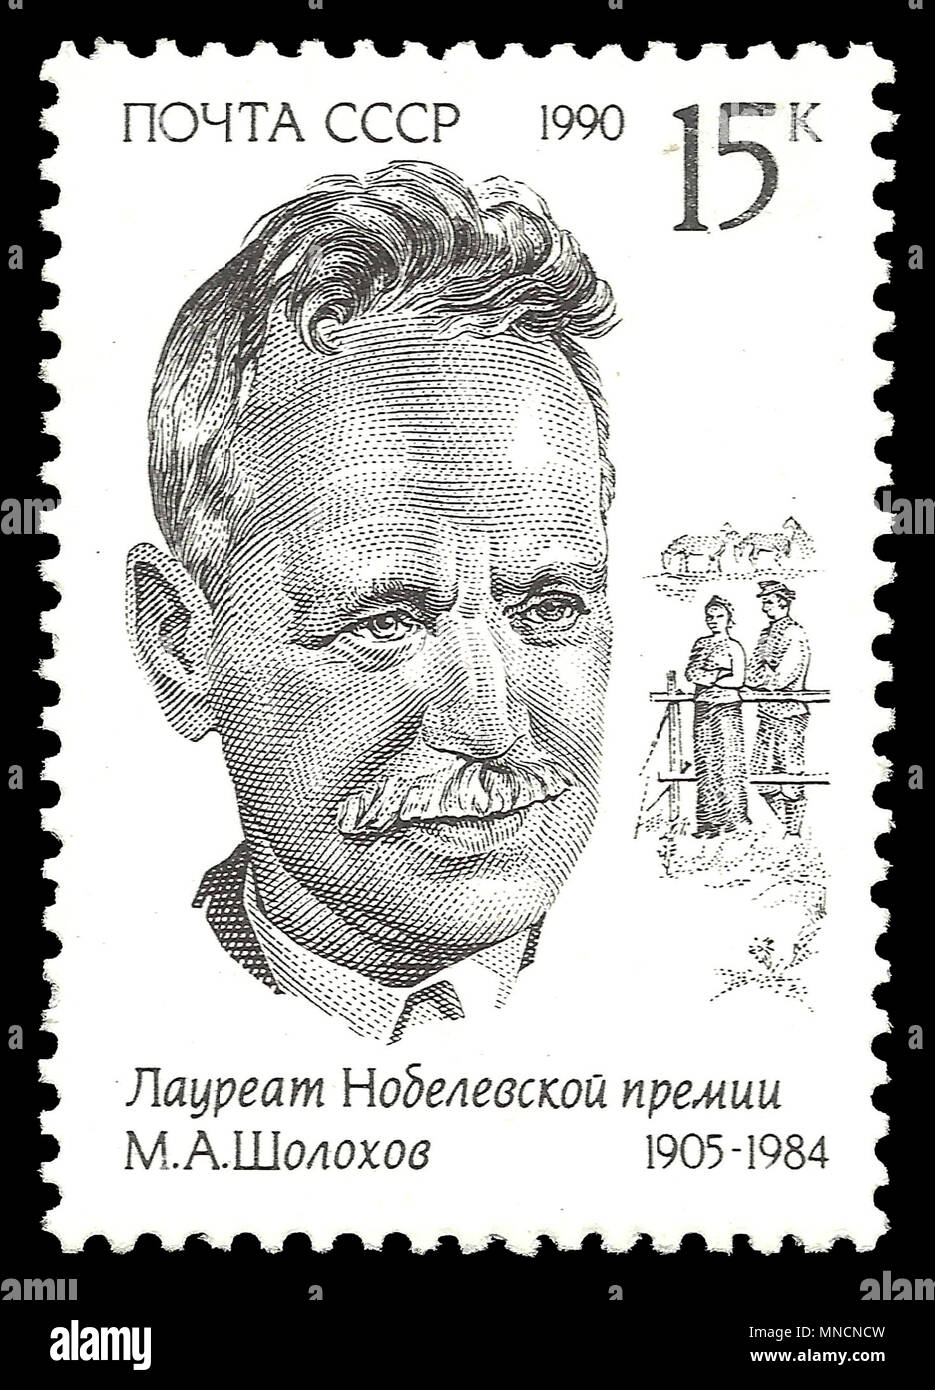 Udssr - Stempel 1990: Color Edition auf berühmte Personen, zeigt Porträt des Nobelpreisträgers Michail Bogachev Stockfoto